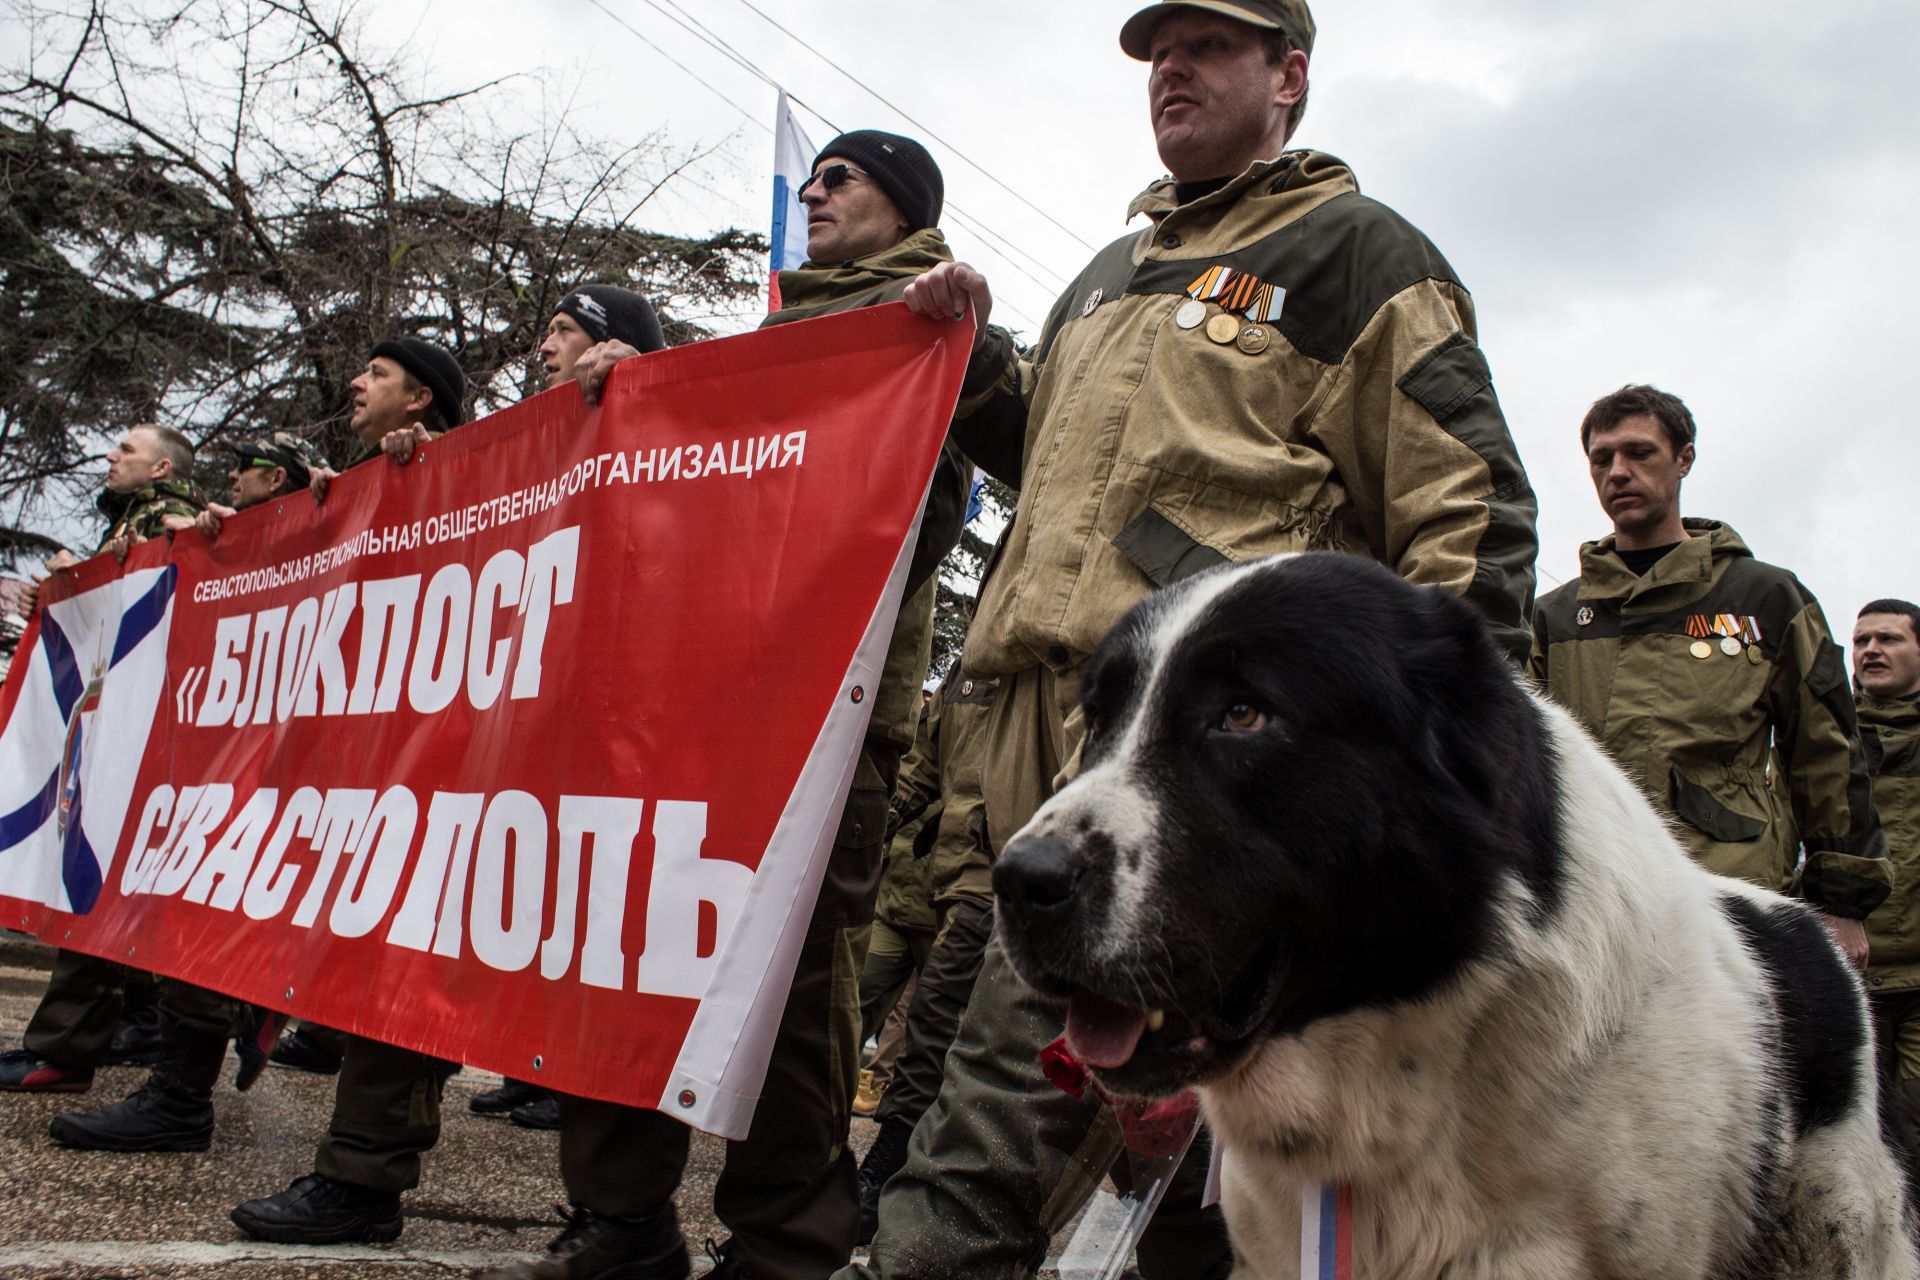  Хората празнуват първата годишнина от подписването на указ за анексирането на Крим от Руската федерация на 18 март 2015 г. в Севастопол, Крим